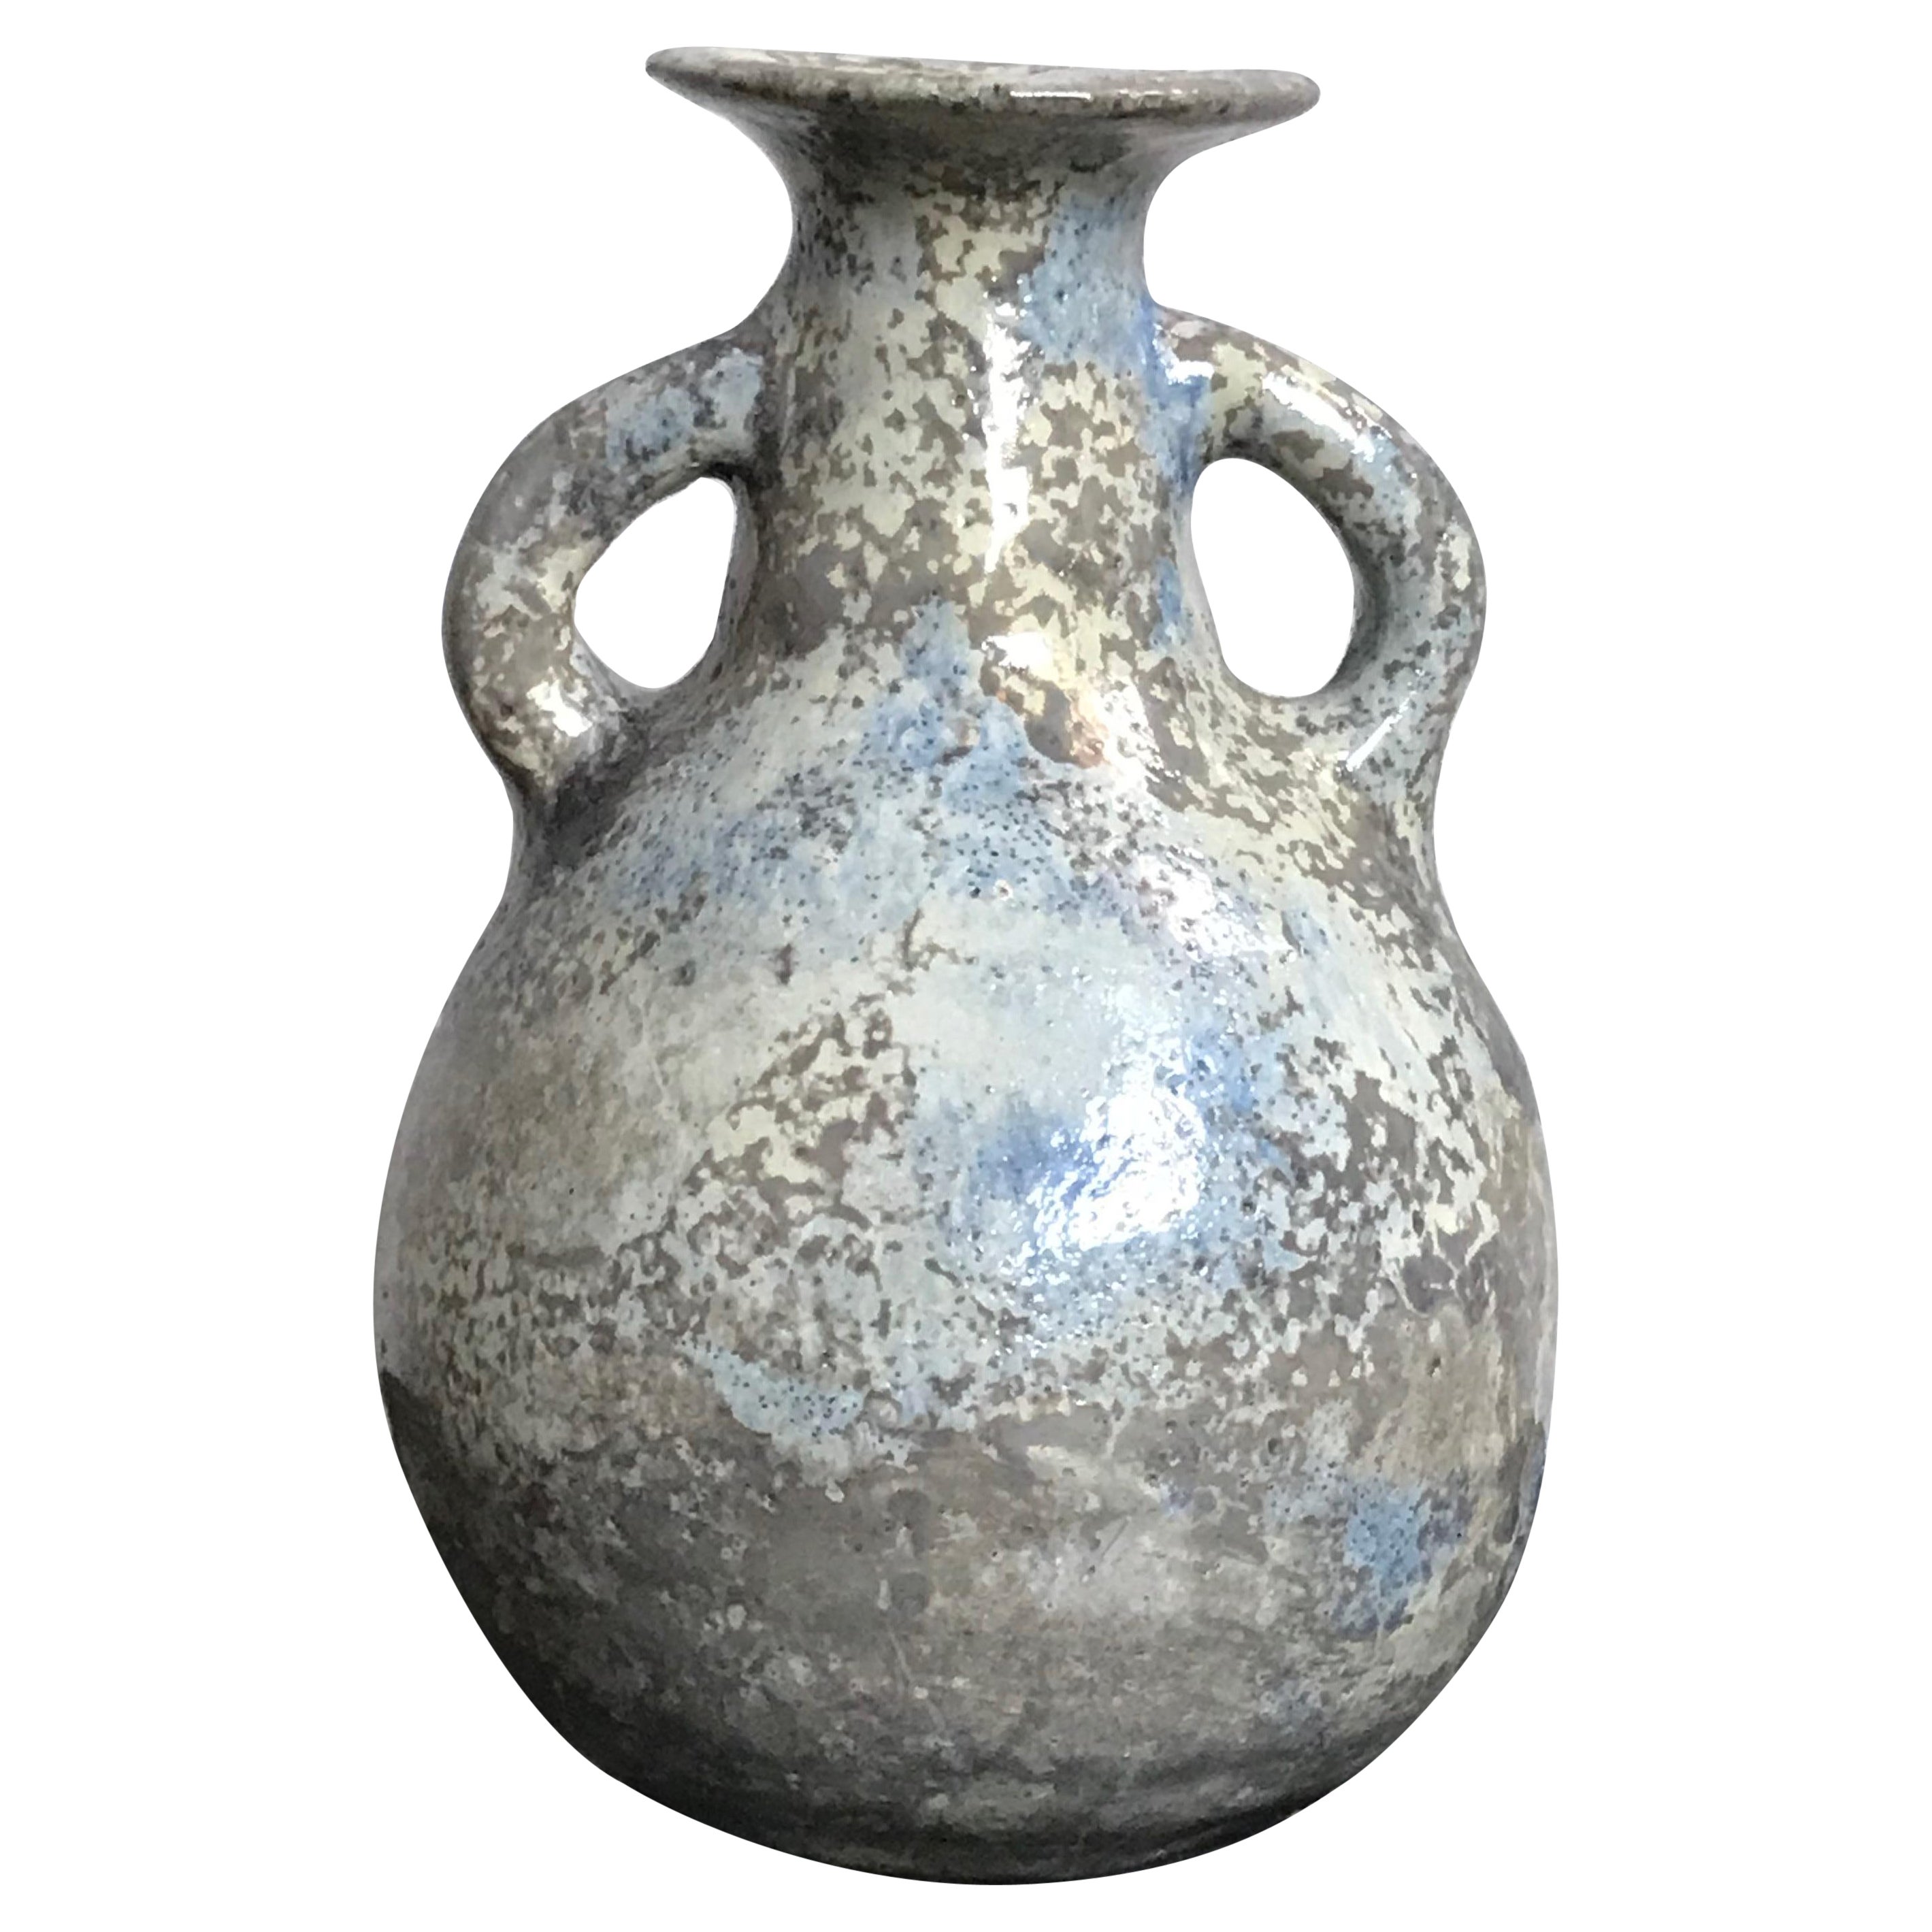  Studio Pottery Vase Weed Beatrice Wood 